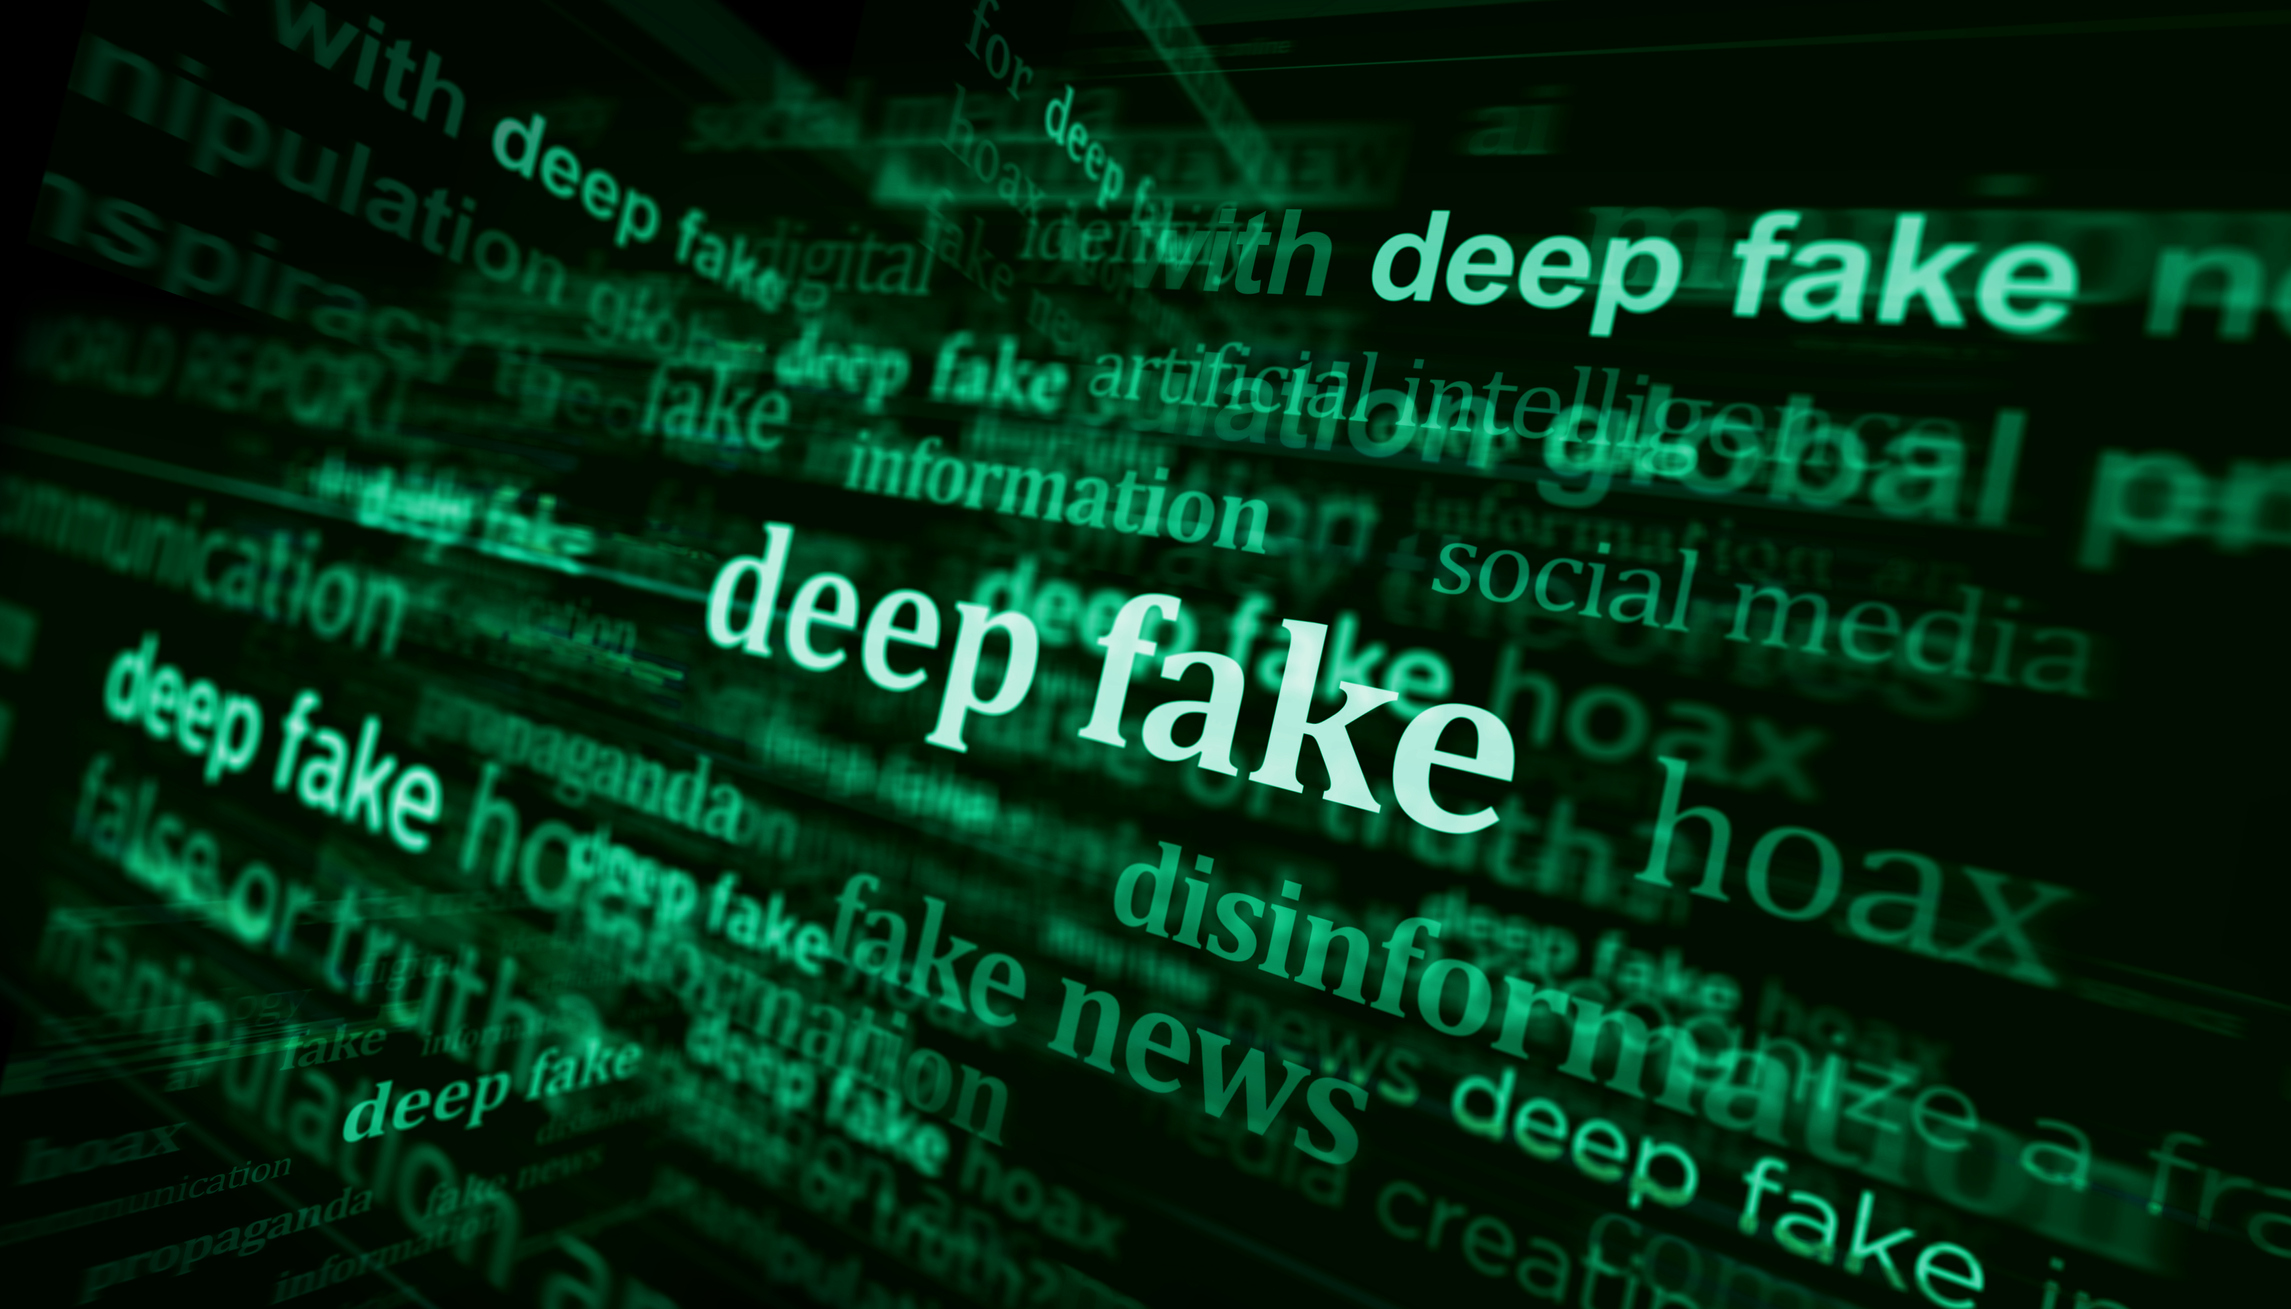 Les États-Unis alertent sur les deepfakes